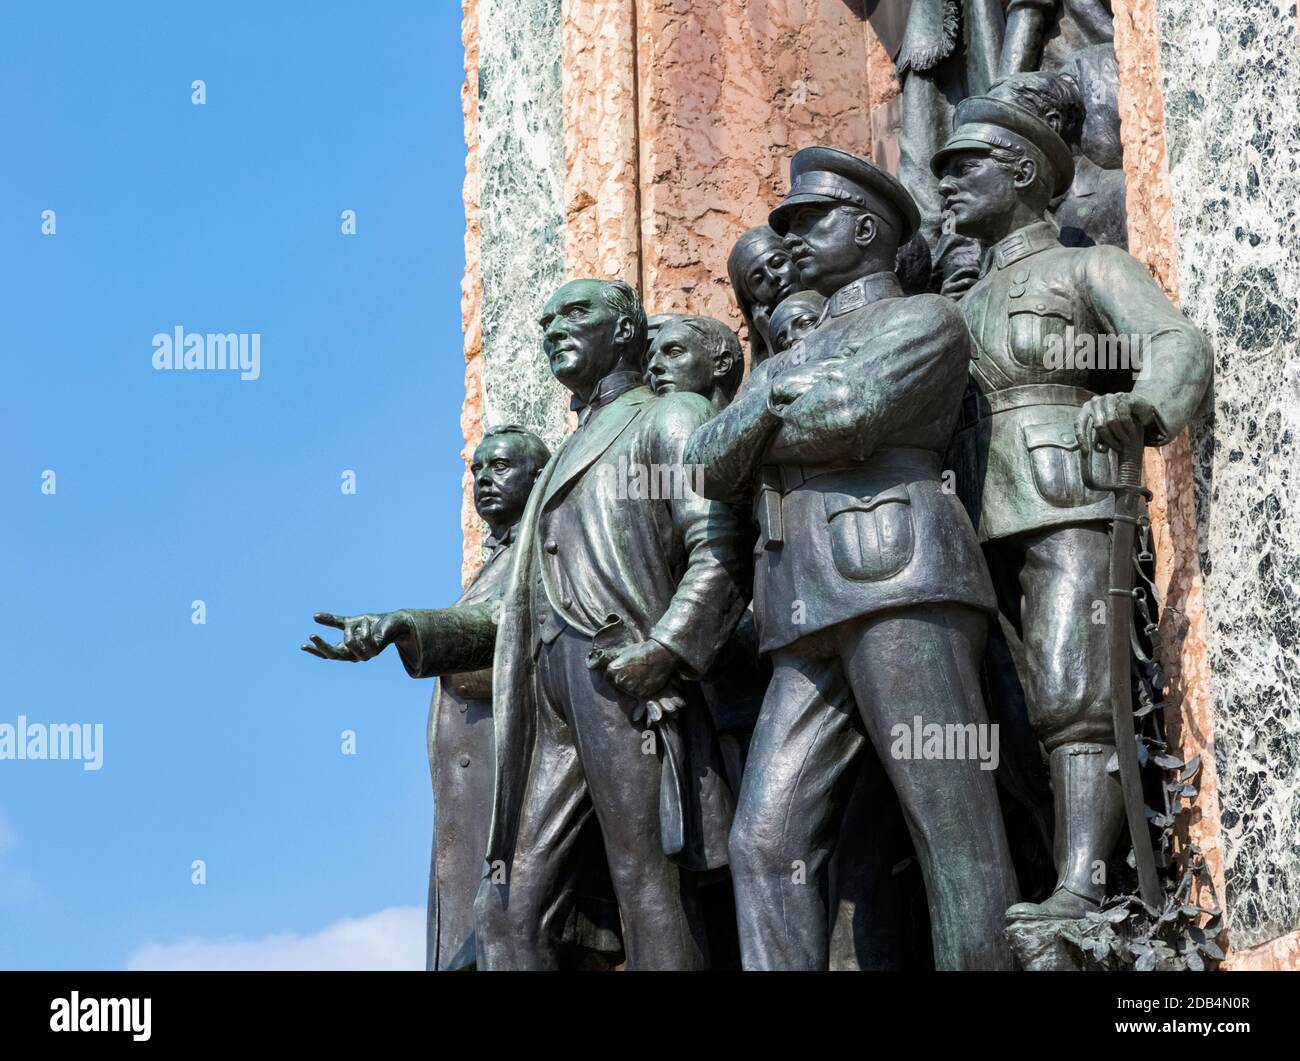 Istanbul, Türkei. Taksim Meydani oder Taksim-Platz. Denkmal der Republik, das Atatürk und die Gründungsväter der Türkischen Republik zeigt. Ein Werk da Stockfoto